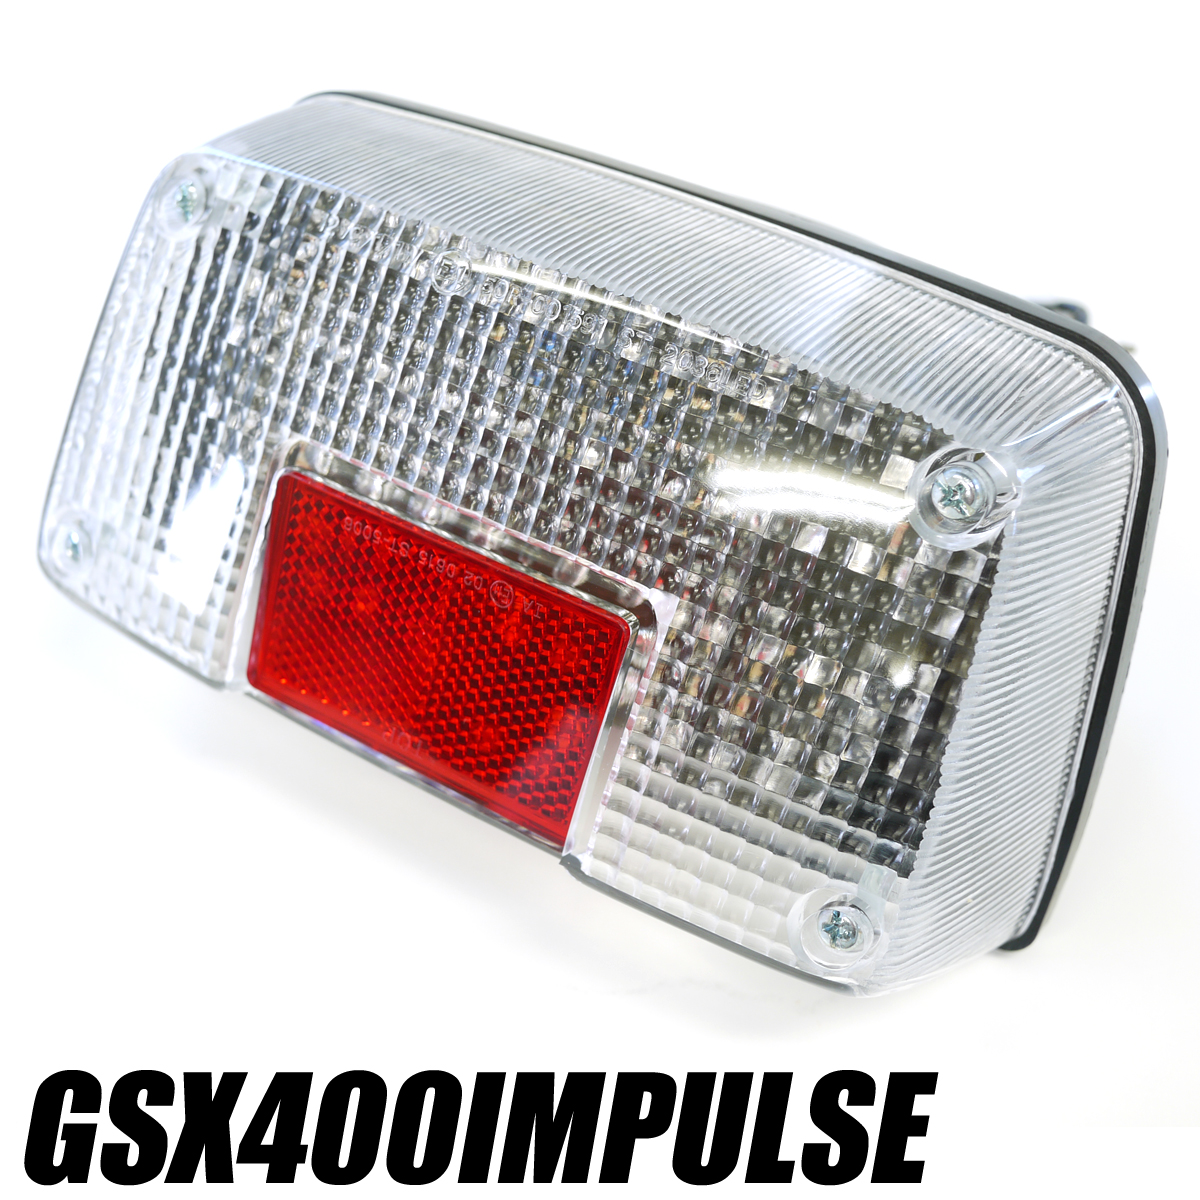 正規品お得GSX400インパルス用LEDテールランプ クリアGK79A GK7CA IMPULSE ポン付けLEDテール 社外品